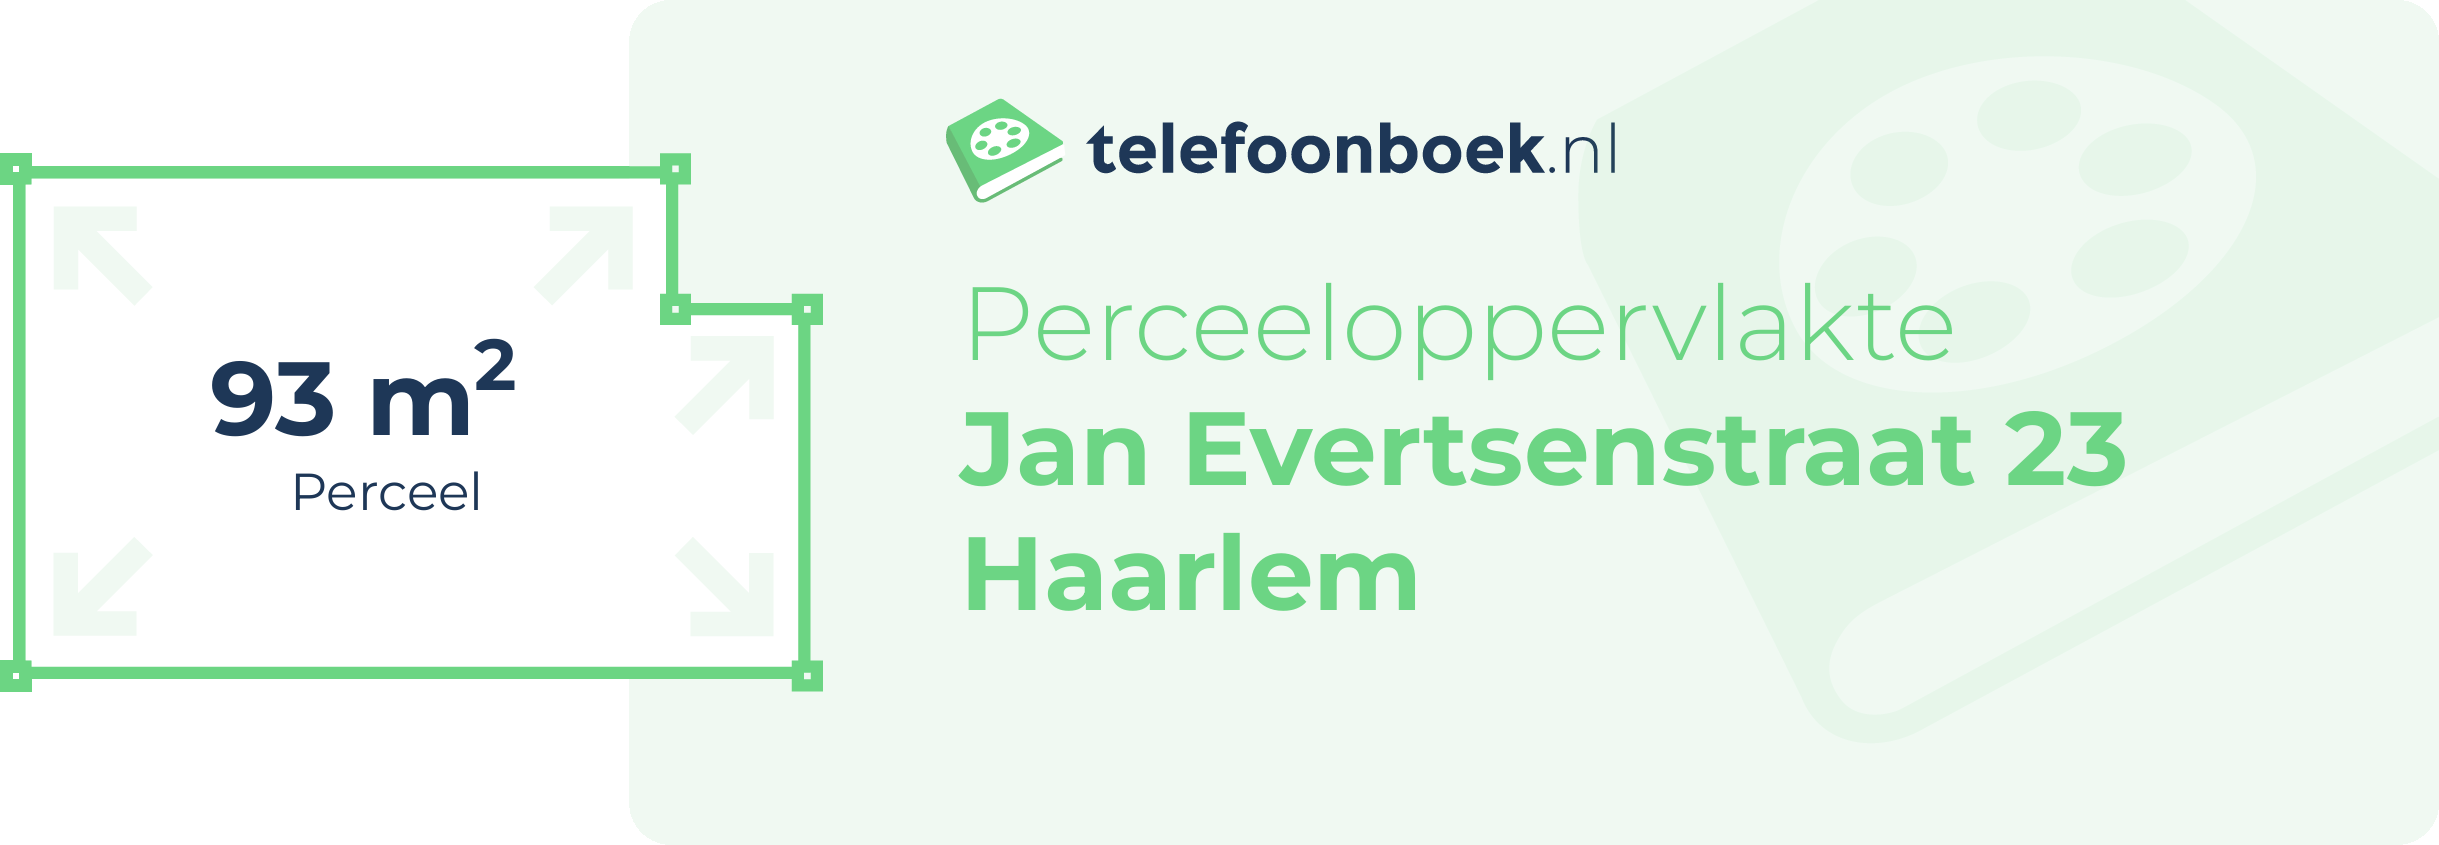 Perceeloppervlakte Jan Evertsenstraat 23 Haarlem